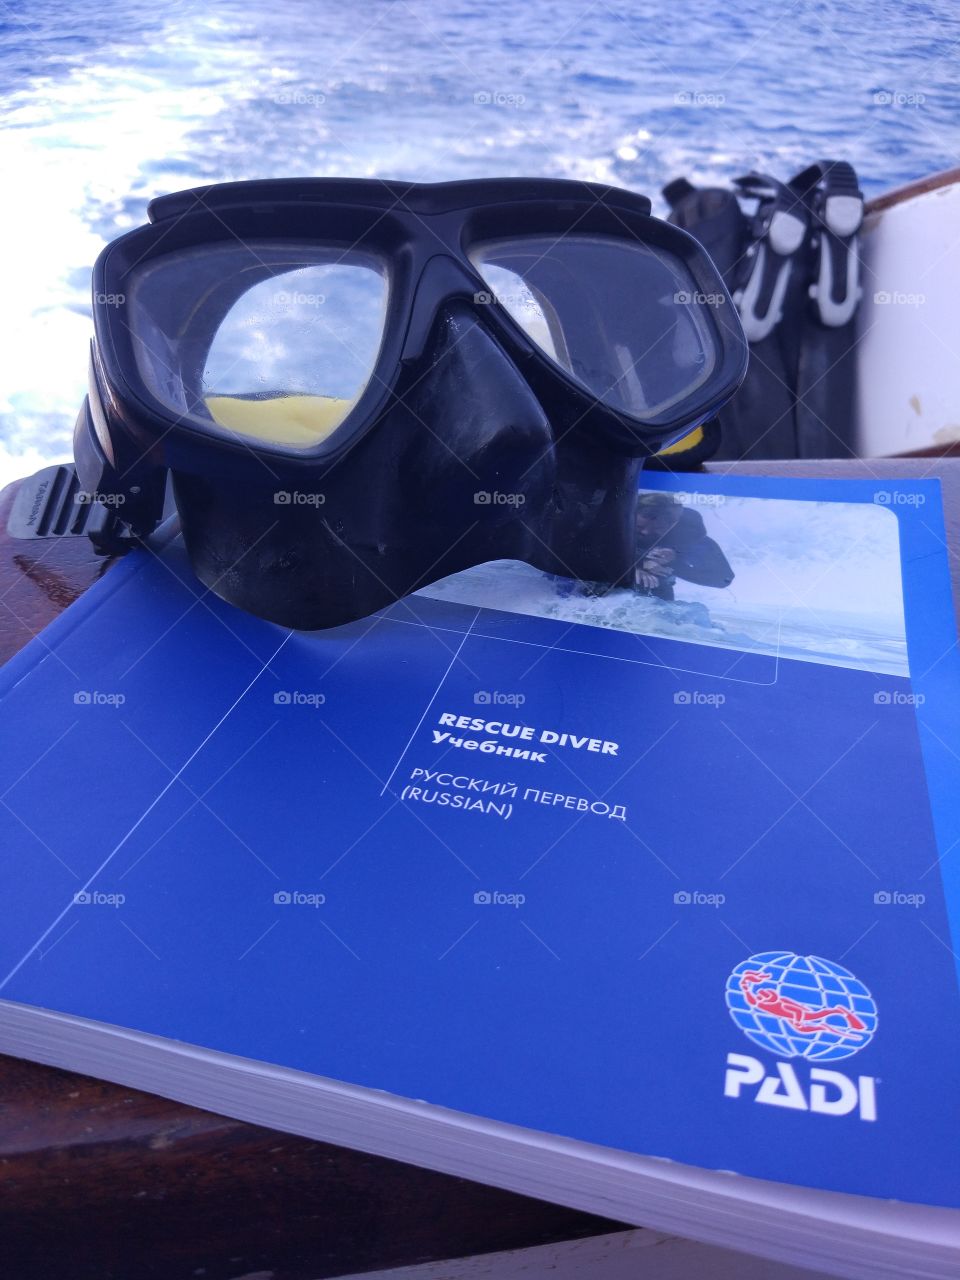 Course Rescue diver PADI